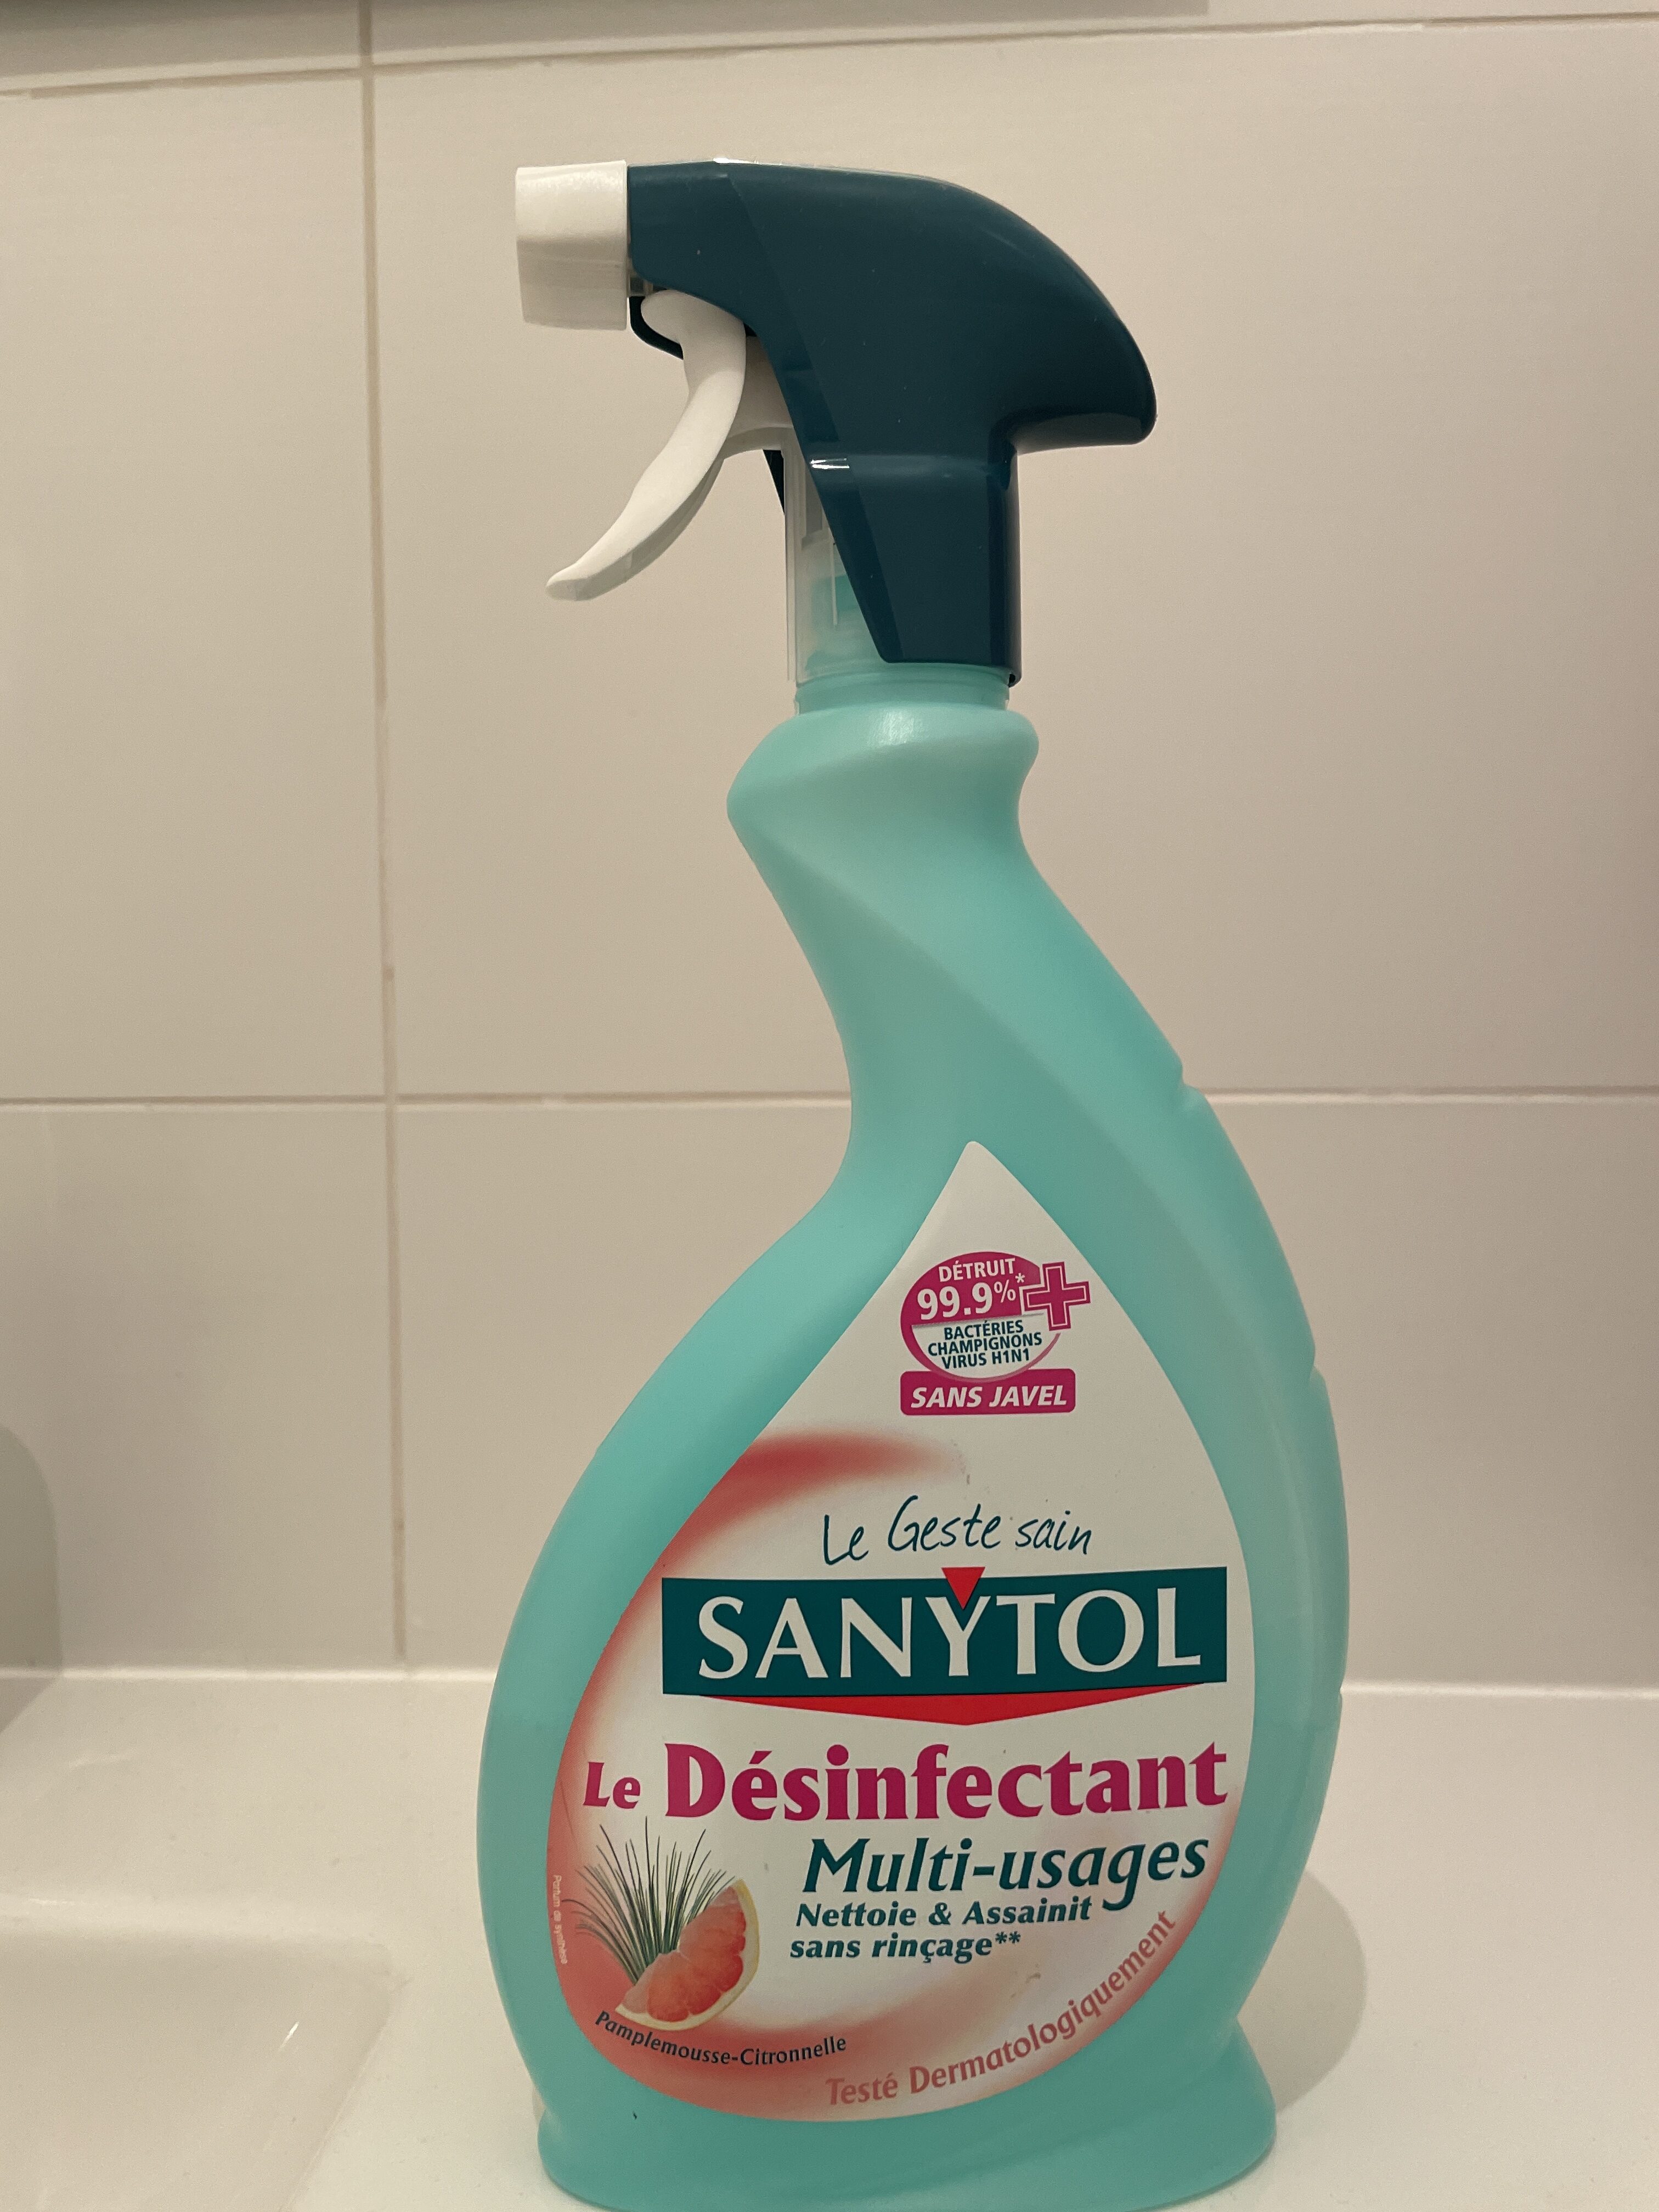 SANYTOL Le désinfectant multi usages - Product - fr